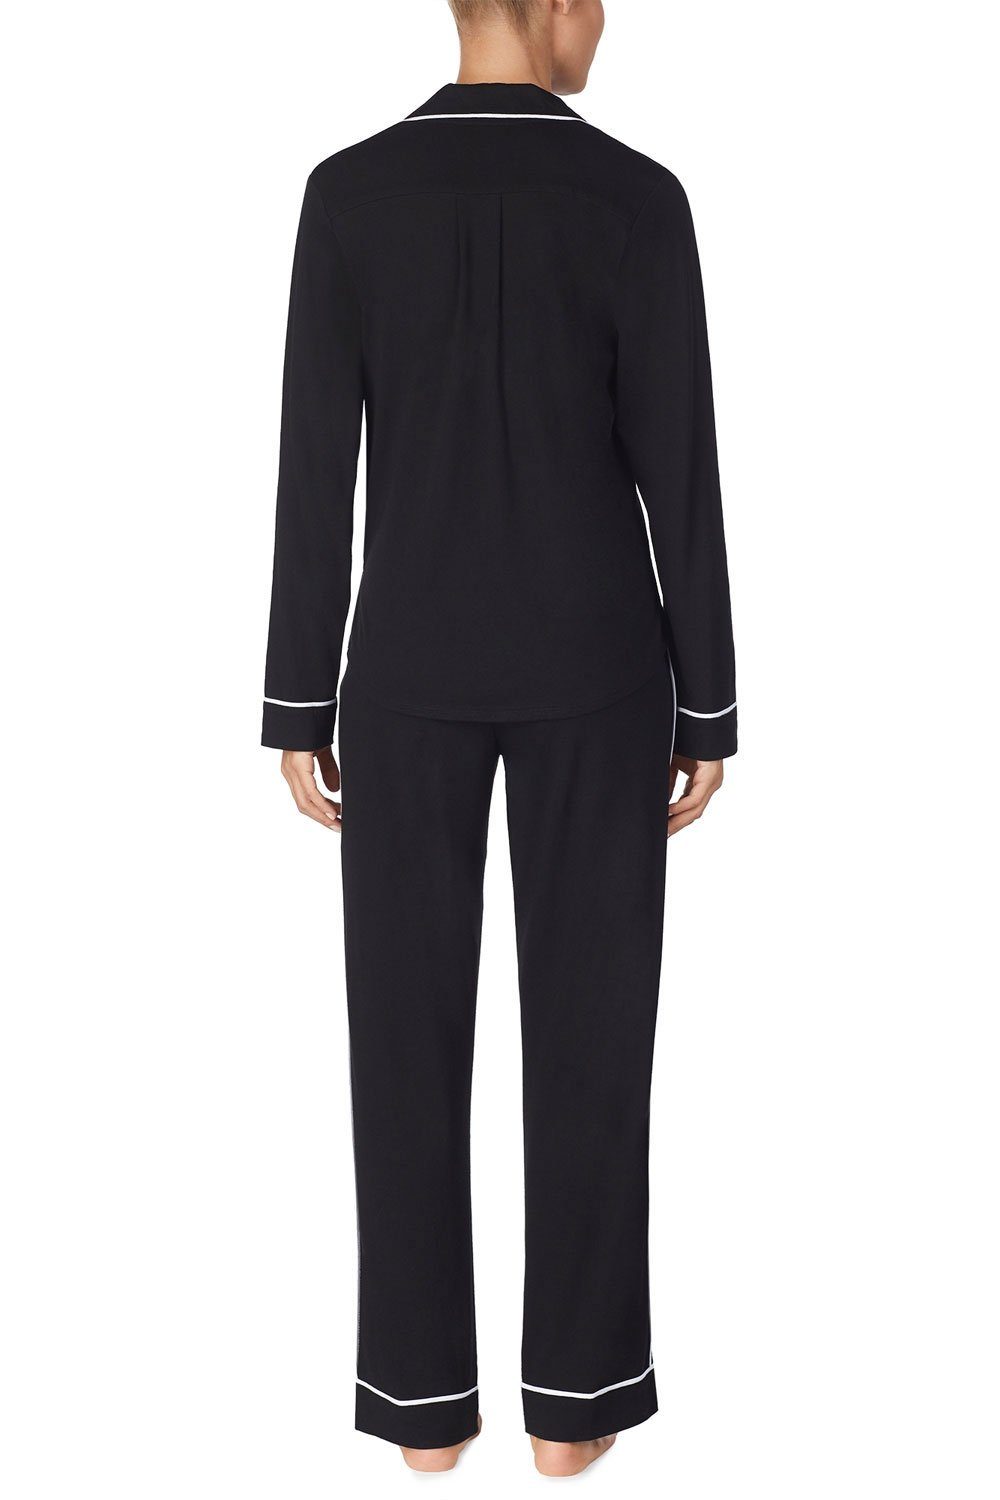 DKNY Pyjama Top & YI2719259 Set black Pant